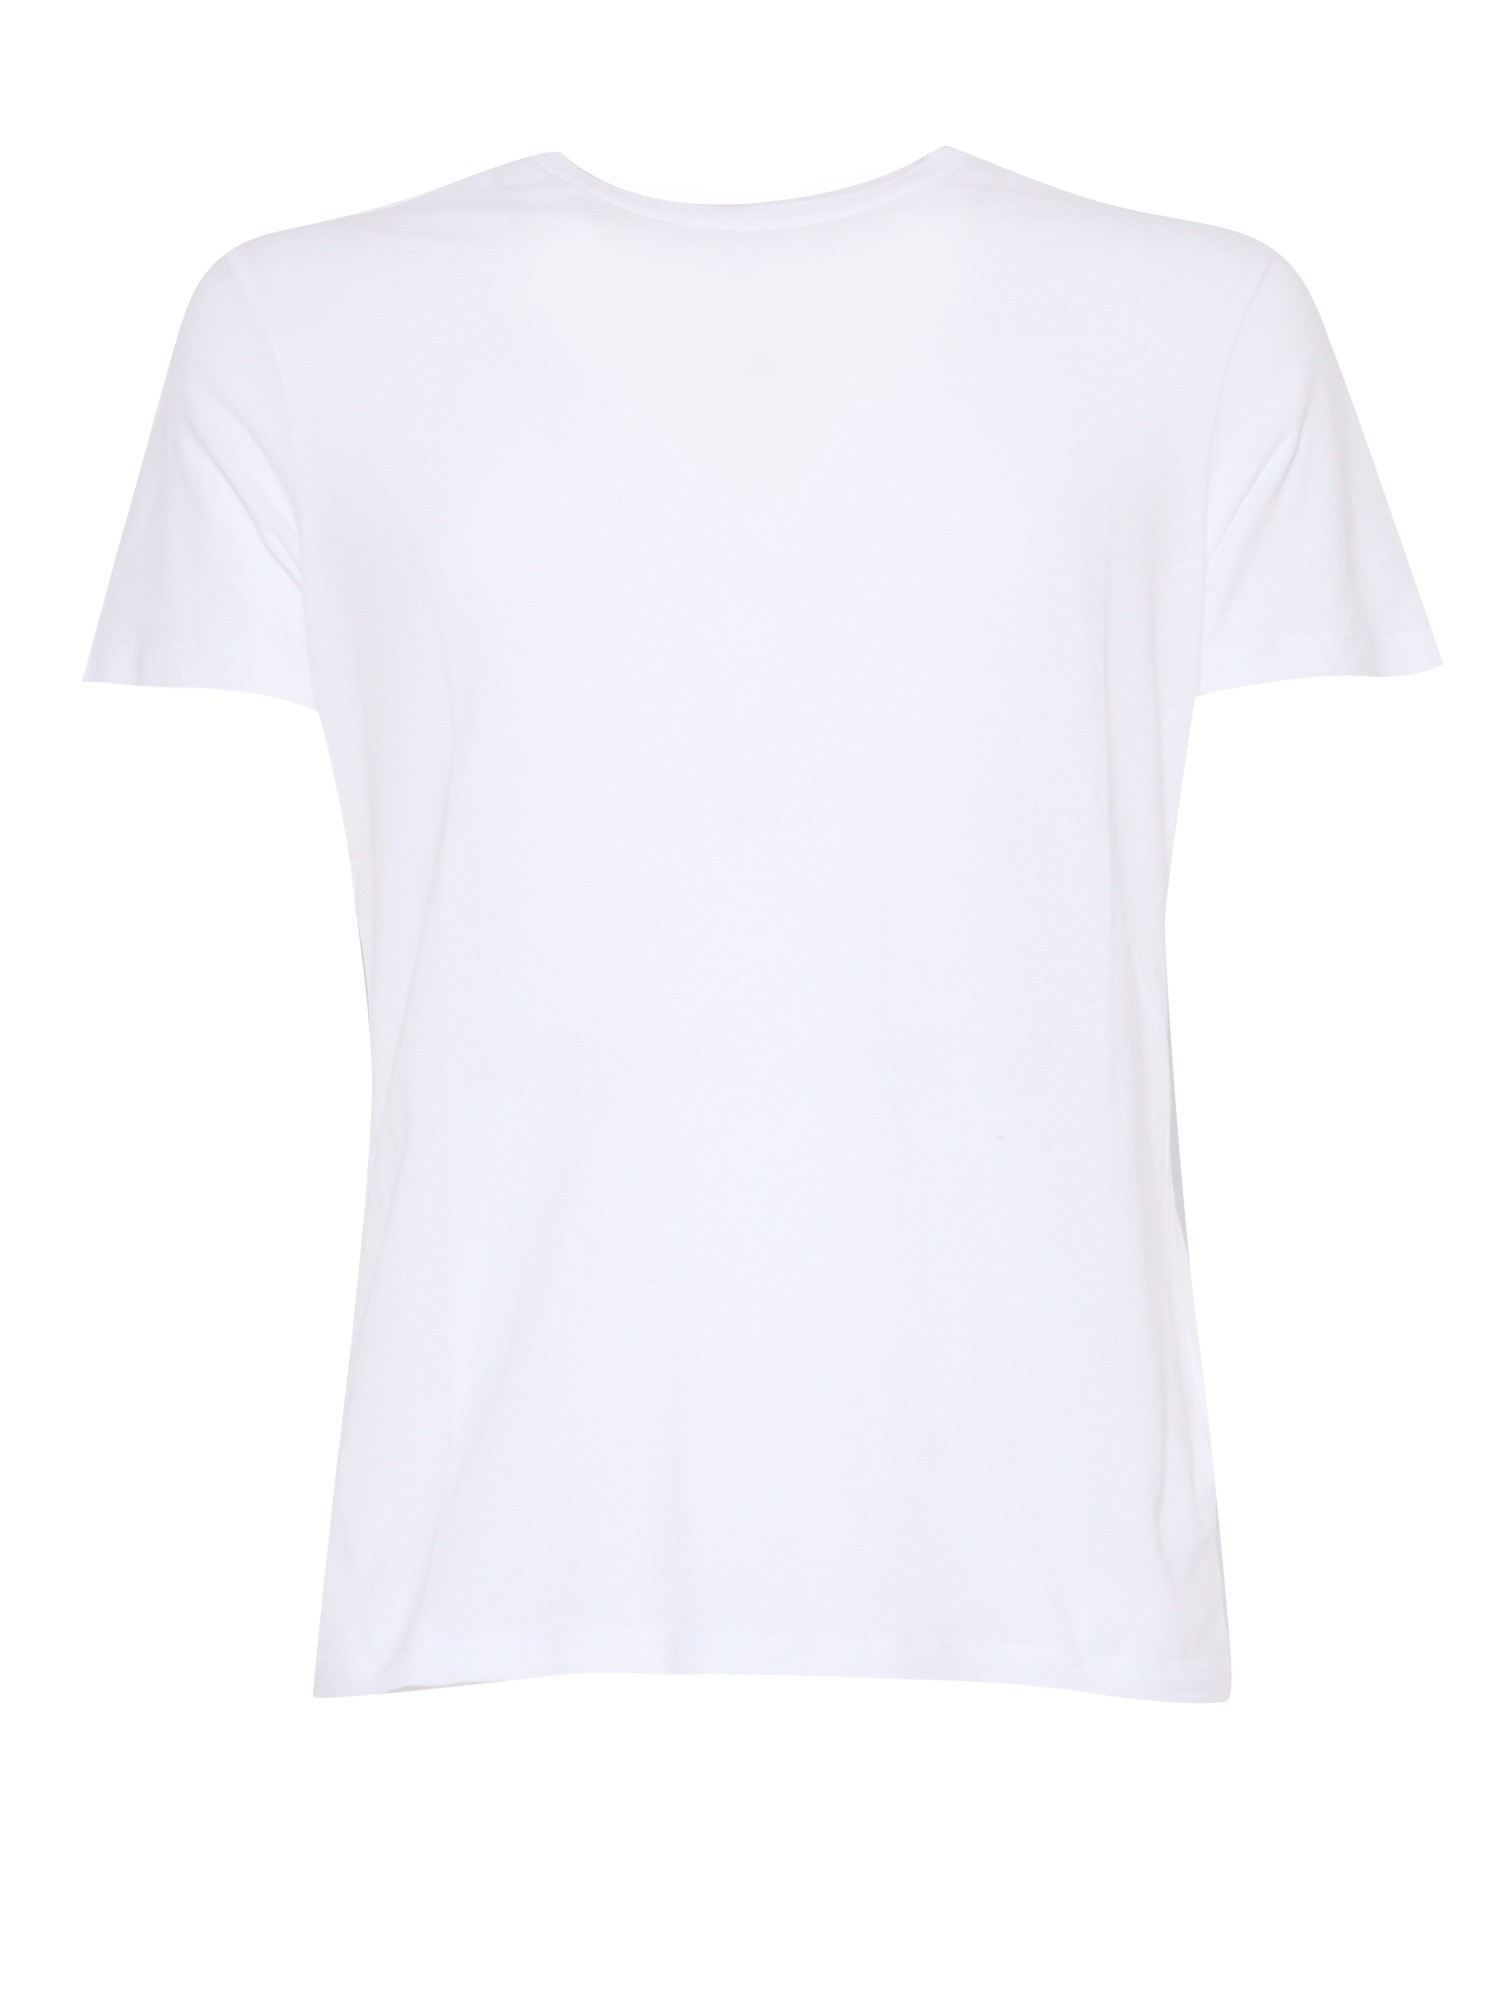 Filatures Du Lion White Cotton T-shirt